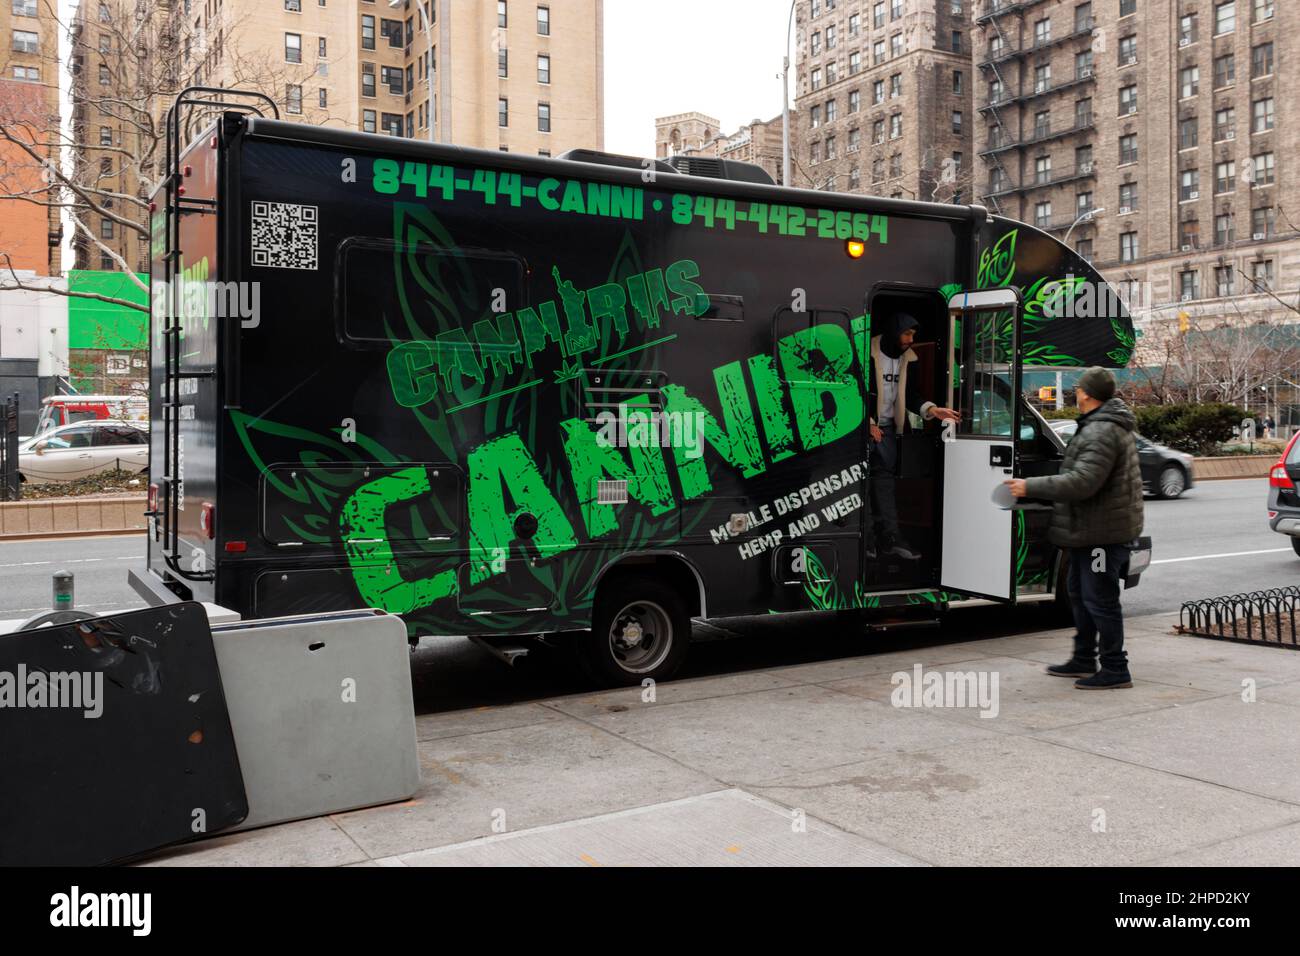 Cannibus, un dispensario móvil para CBD, cáñamo, macetas y productos de marihuana, estacionado en el Upper West Side de Nueva York, un nuevo servicio que sirve a la nueva lega Foto de stock